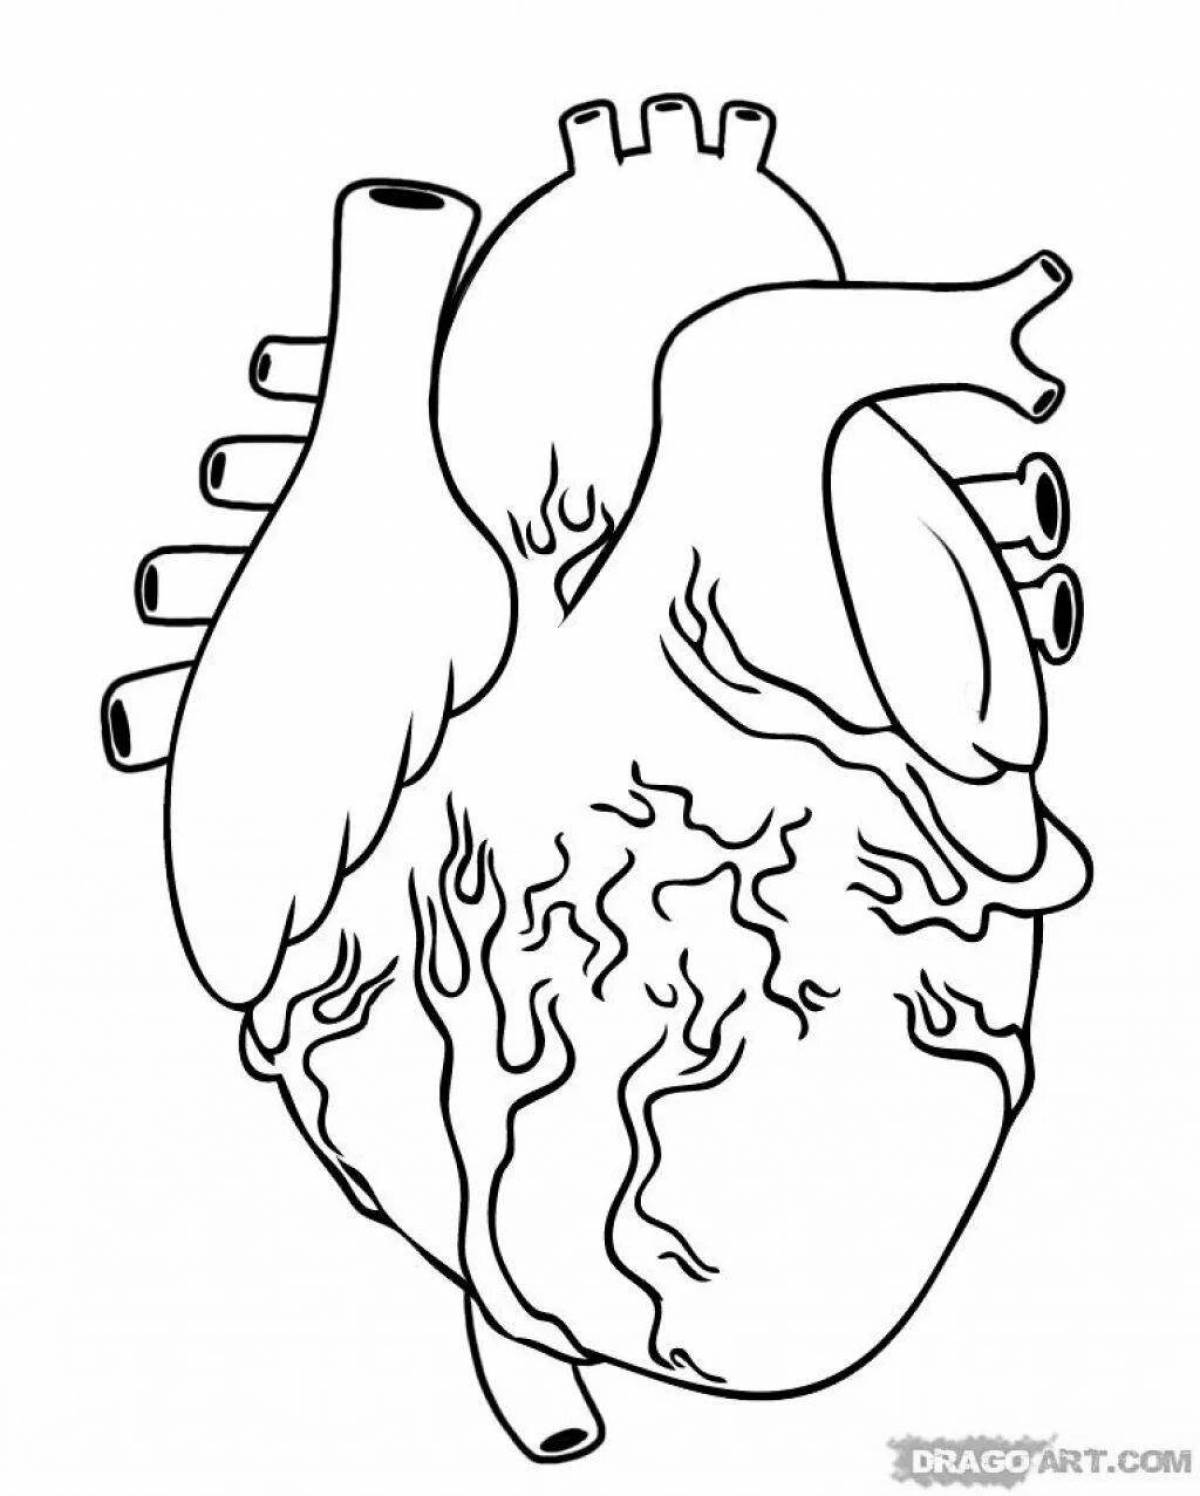 Прекрасная раскраска сердечный орган